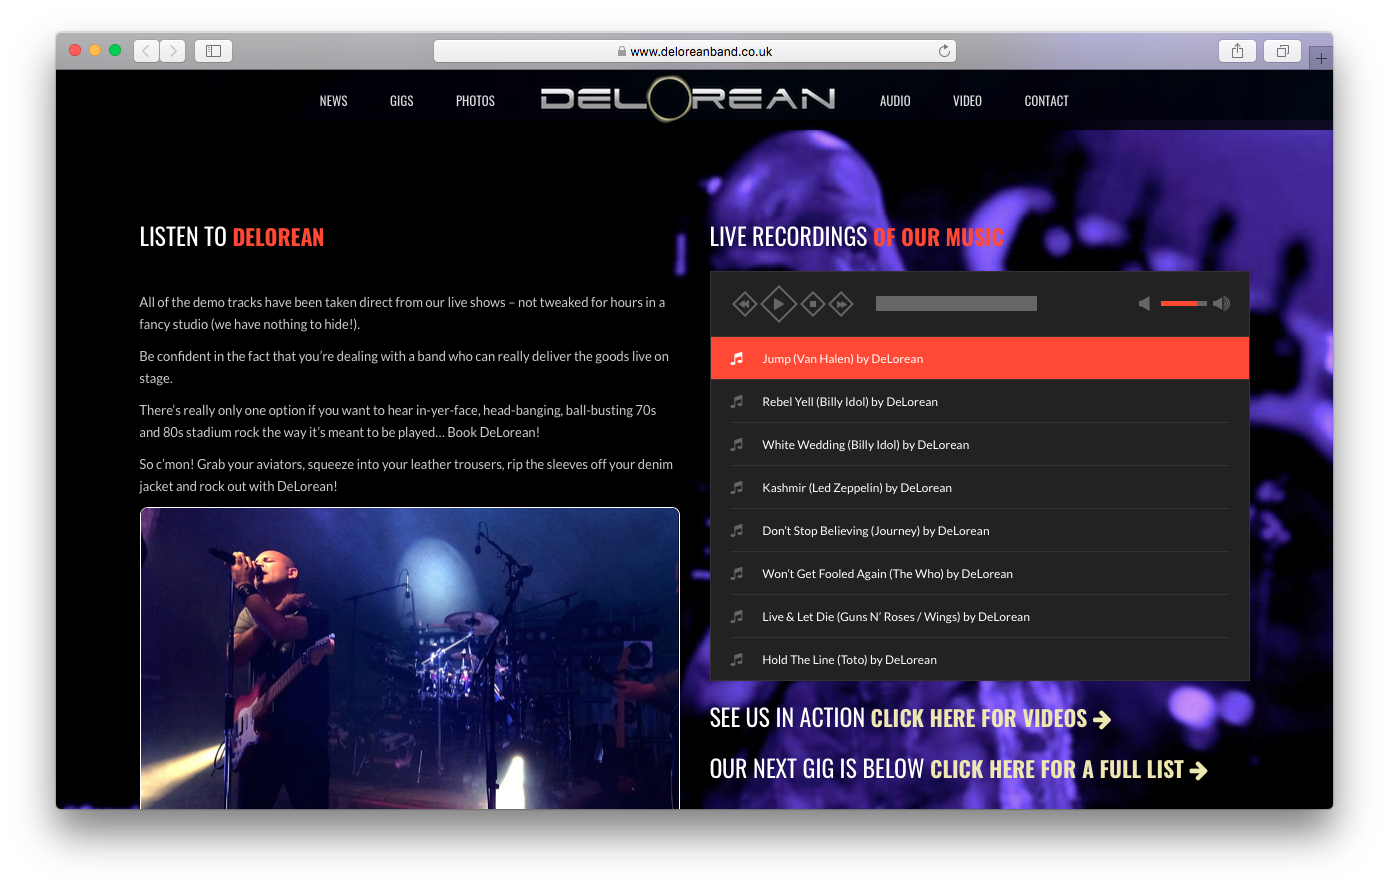 Delorean - www.deloreanband.co.uk